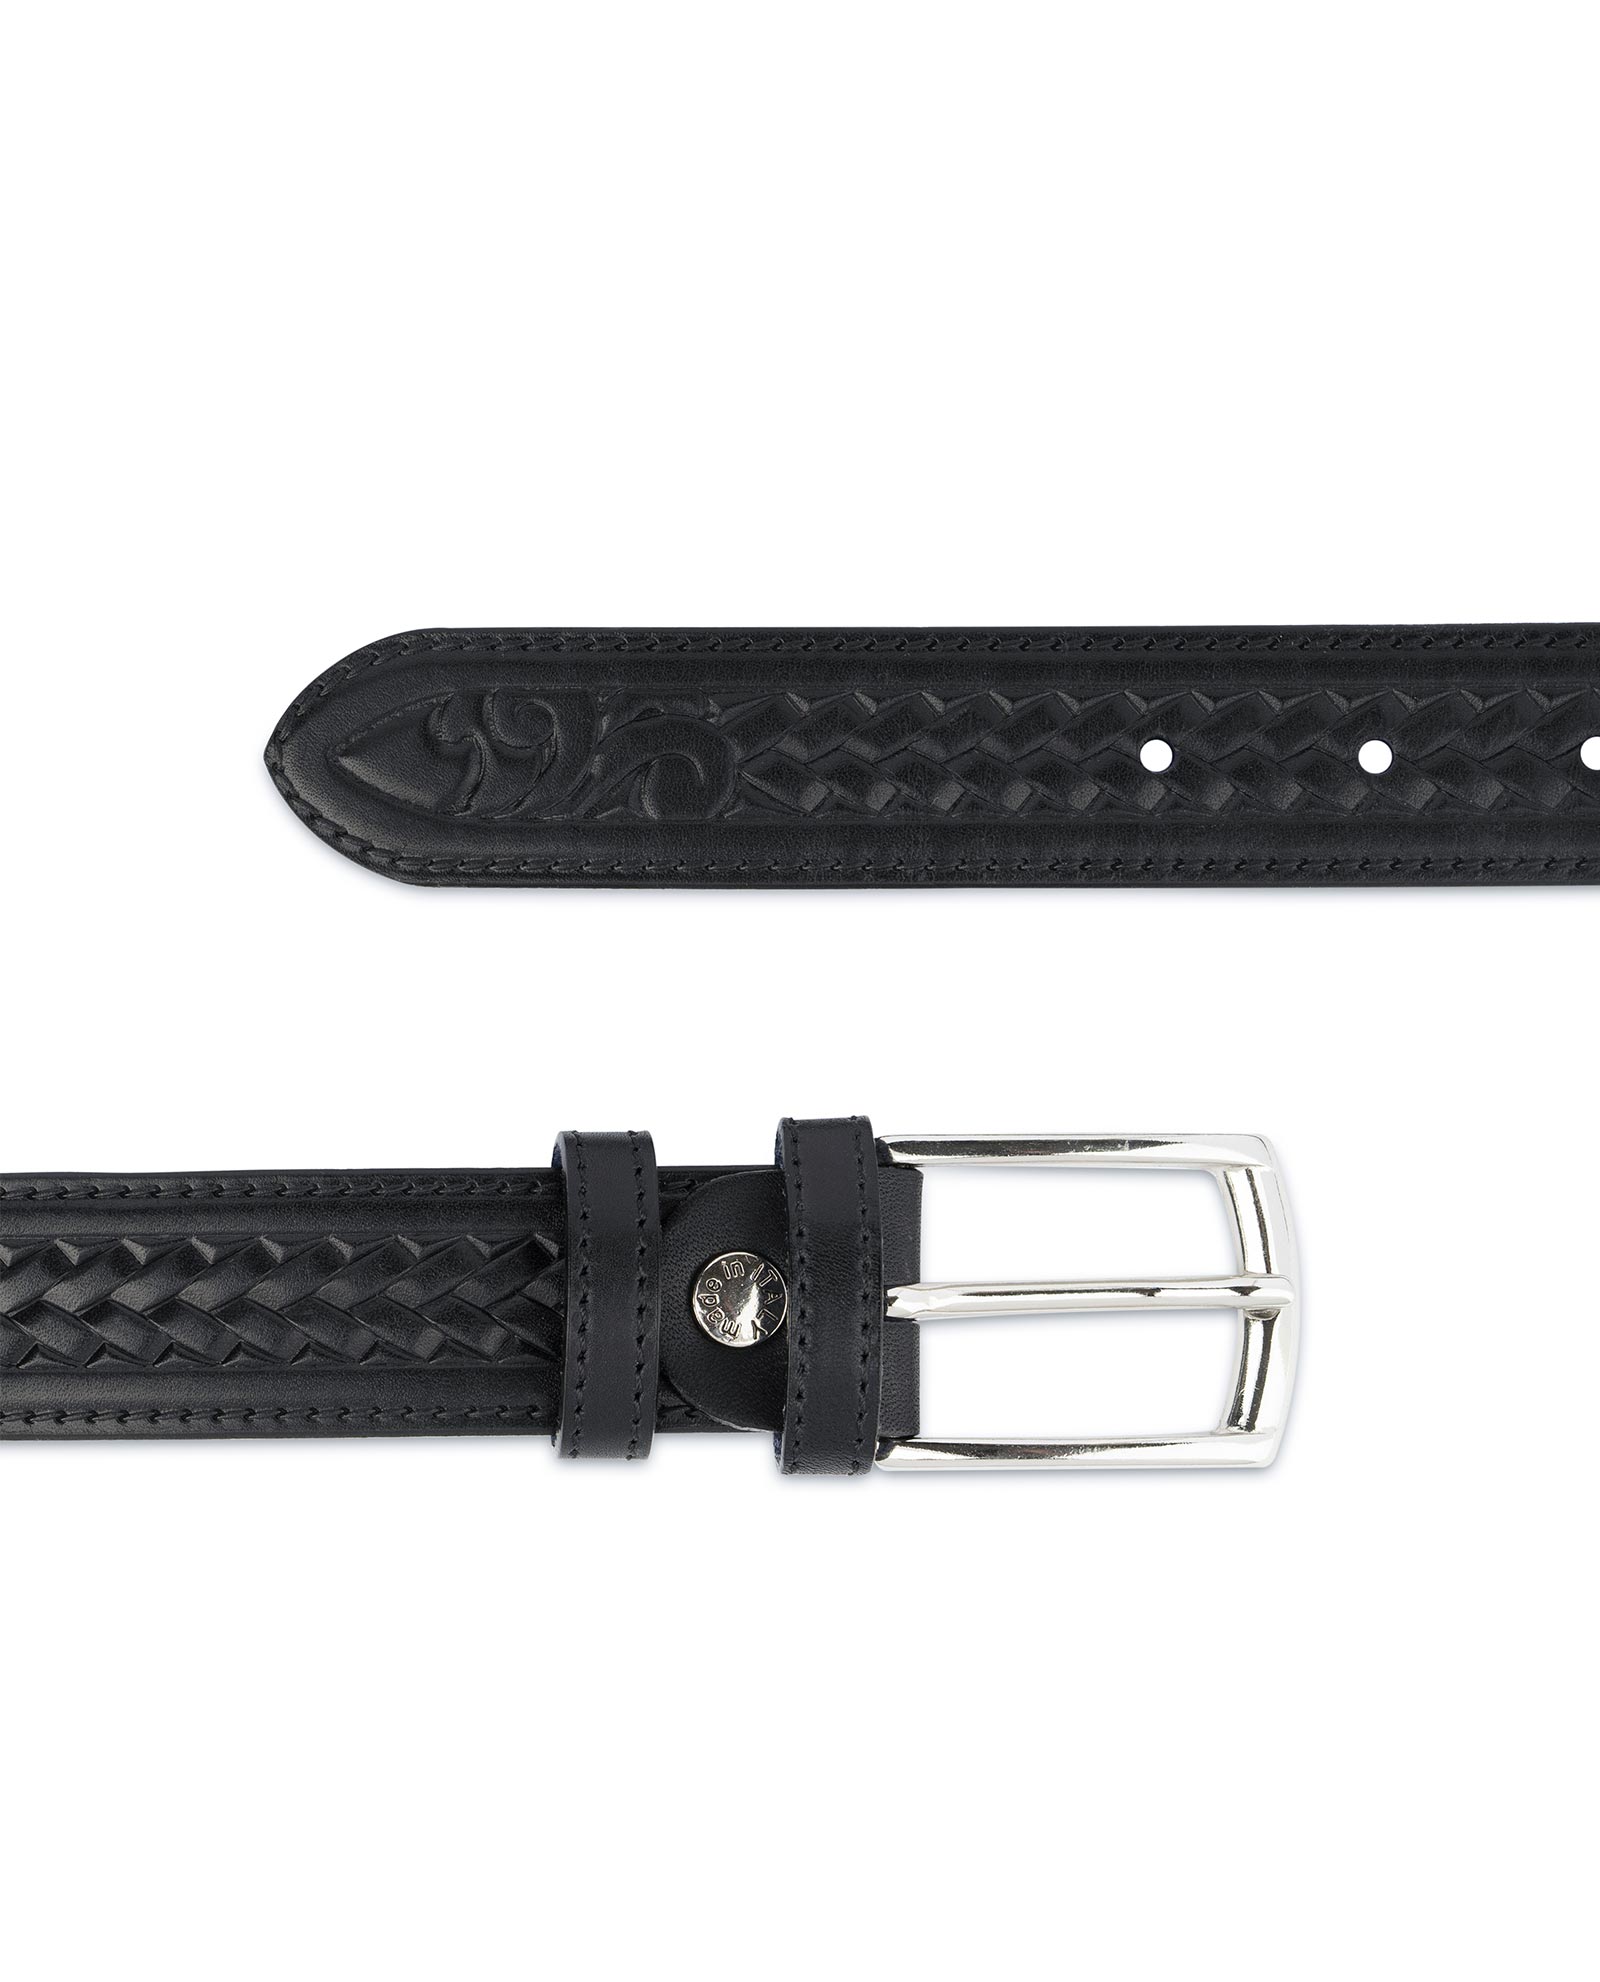 Buy Tooled Leather Belt | Black Full Grain | LeatherBeltsOnline.com